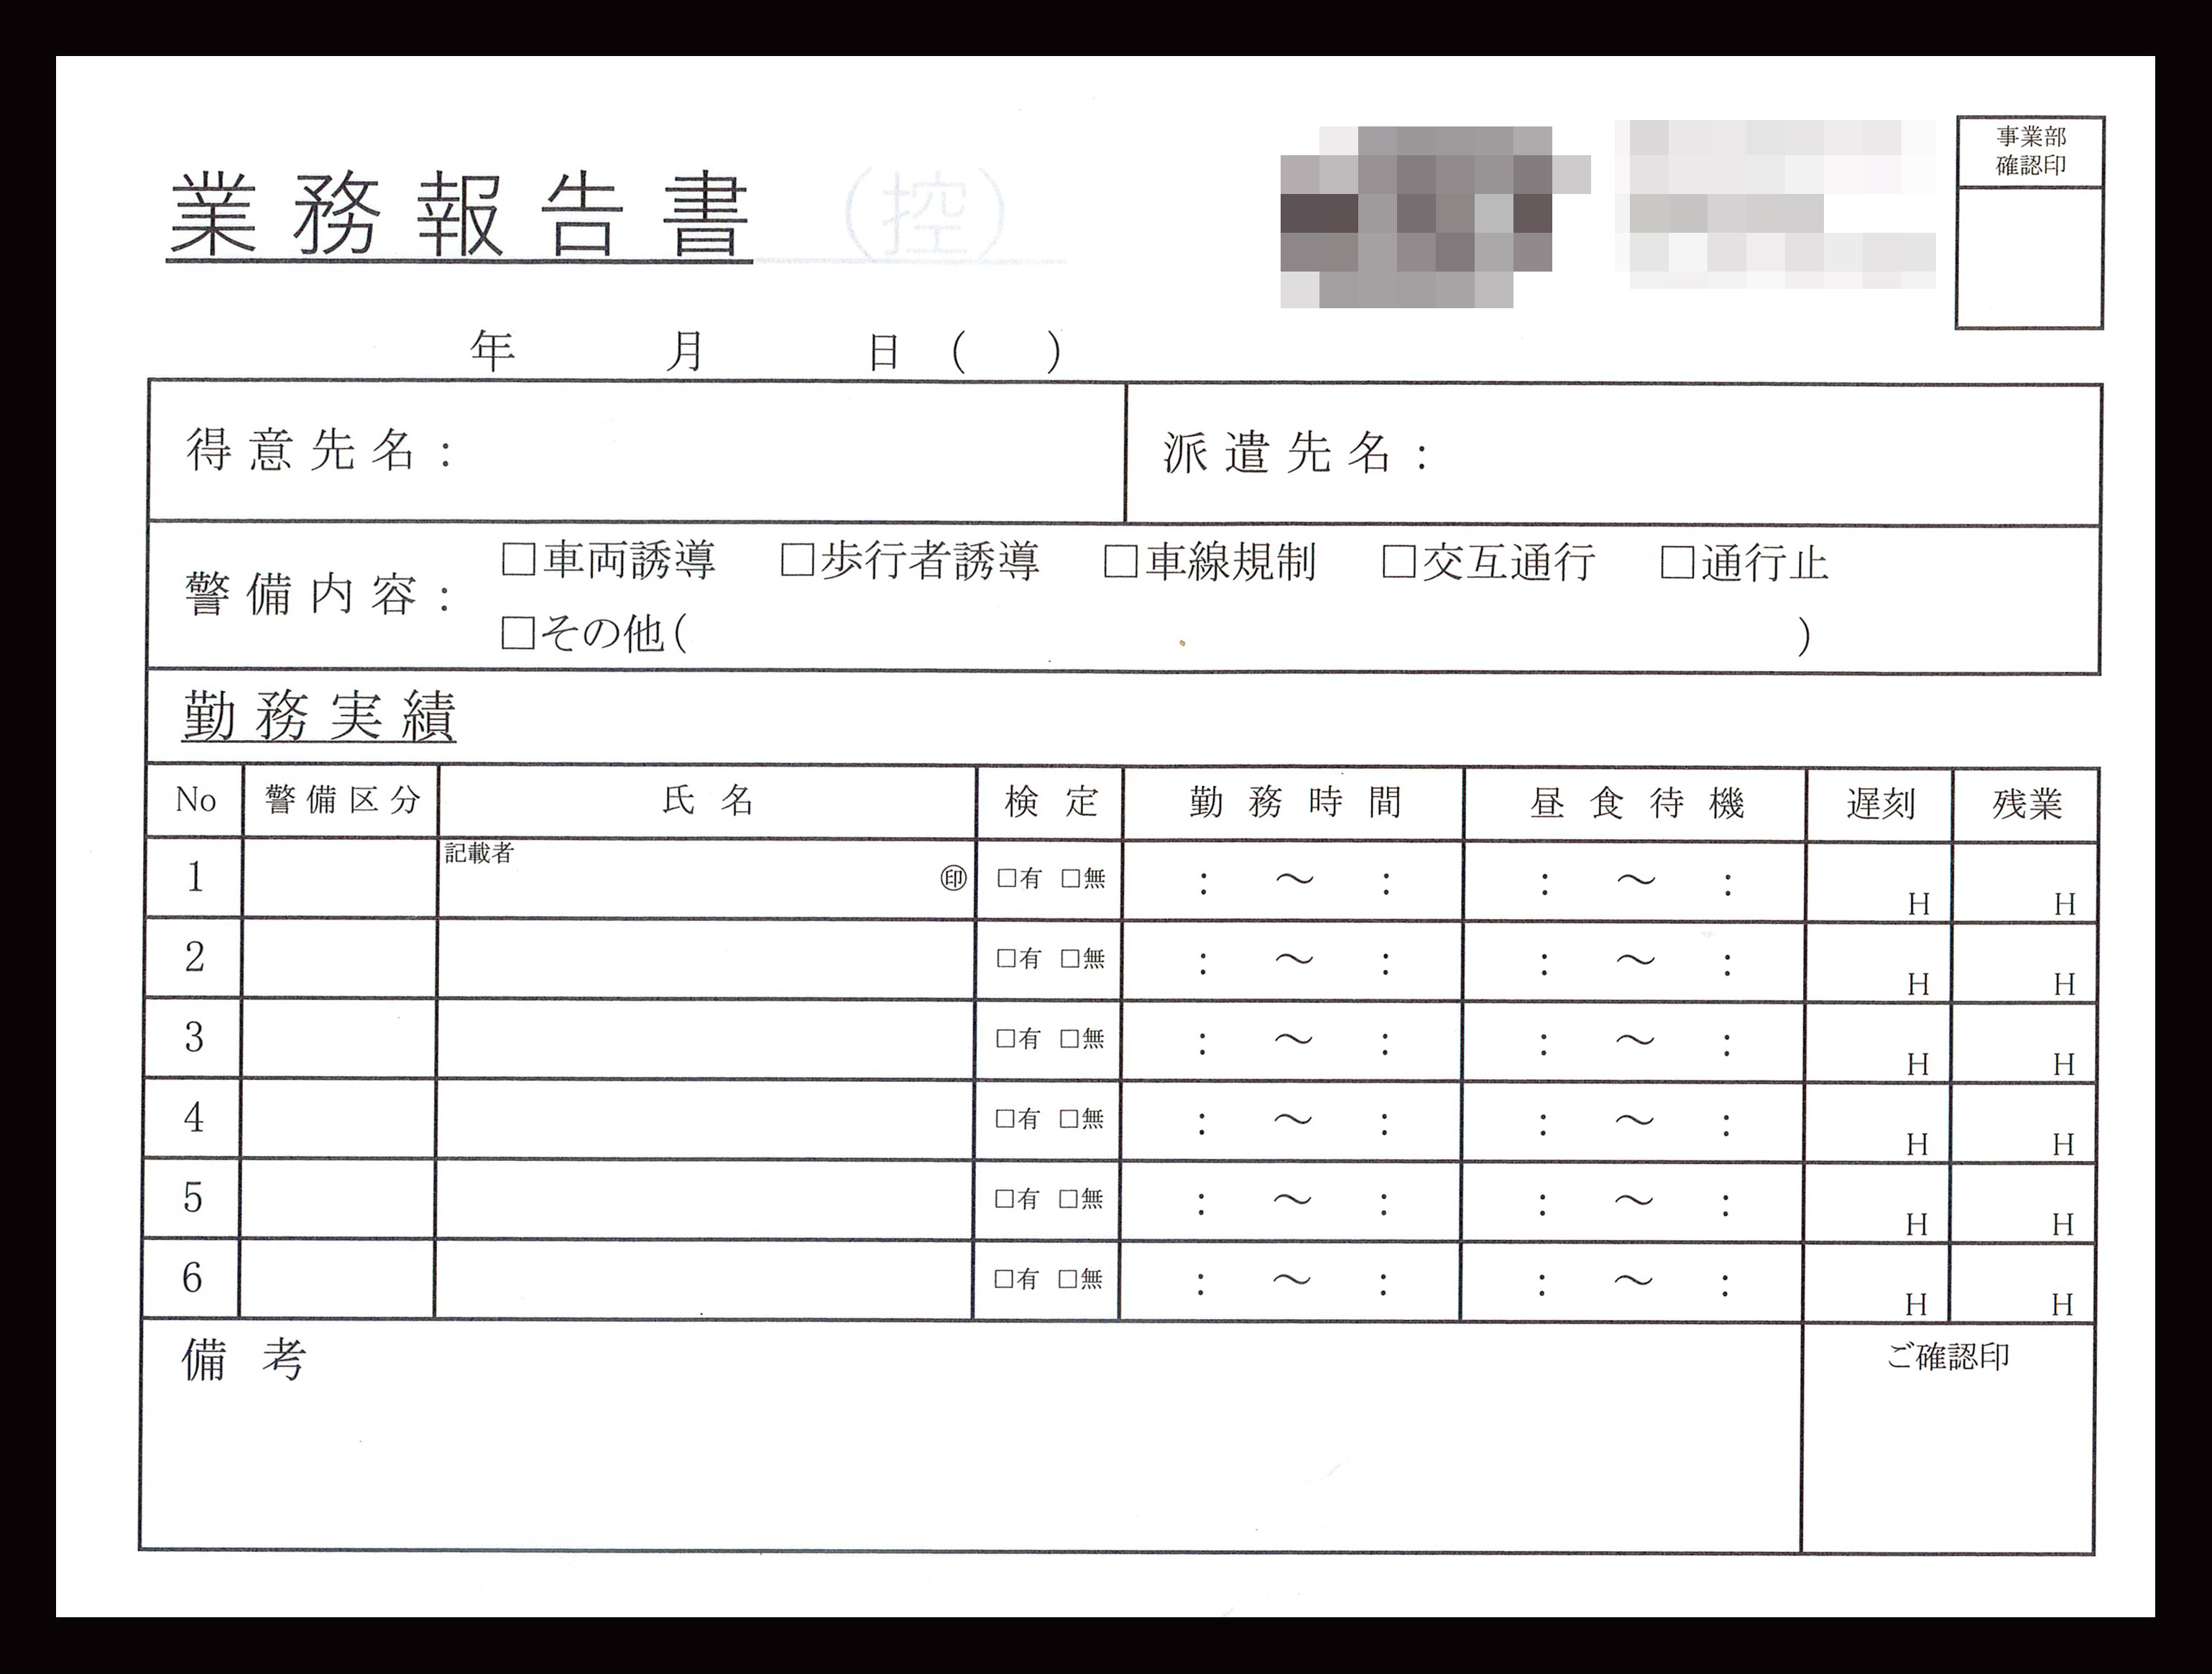 電気工事業で使用する業務報告書（2枚複写50組）の伝票作成実績